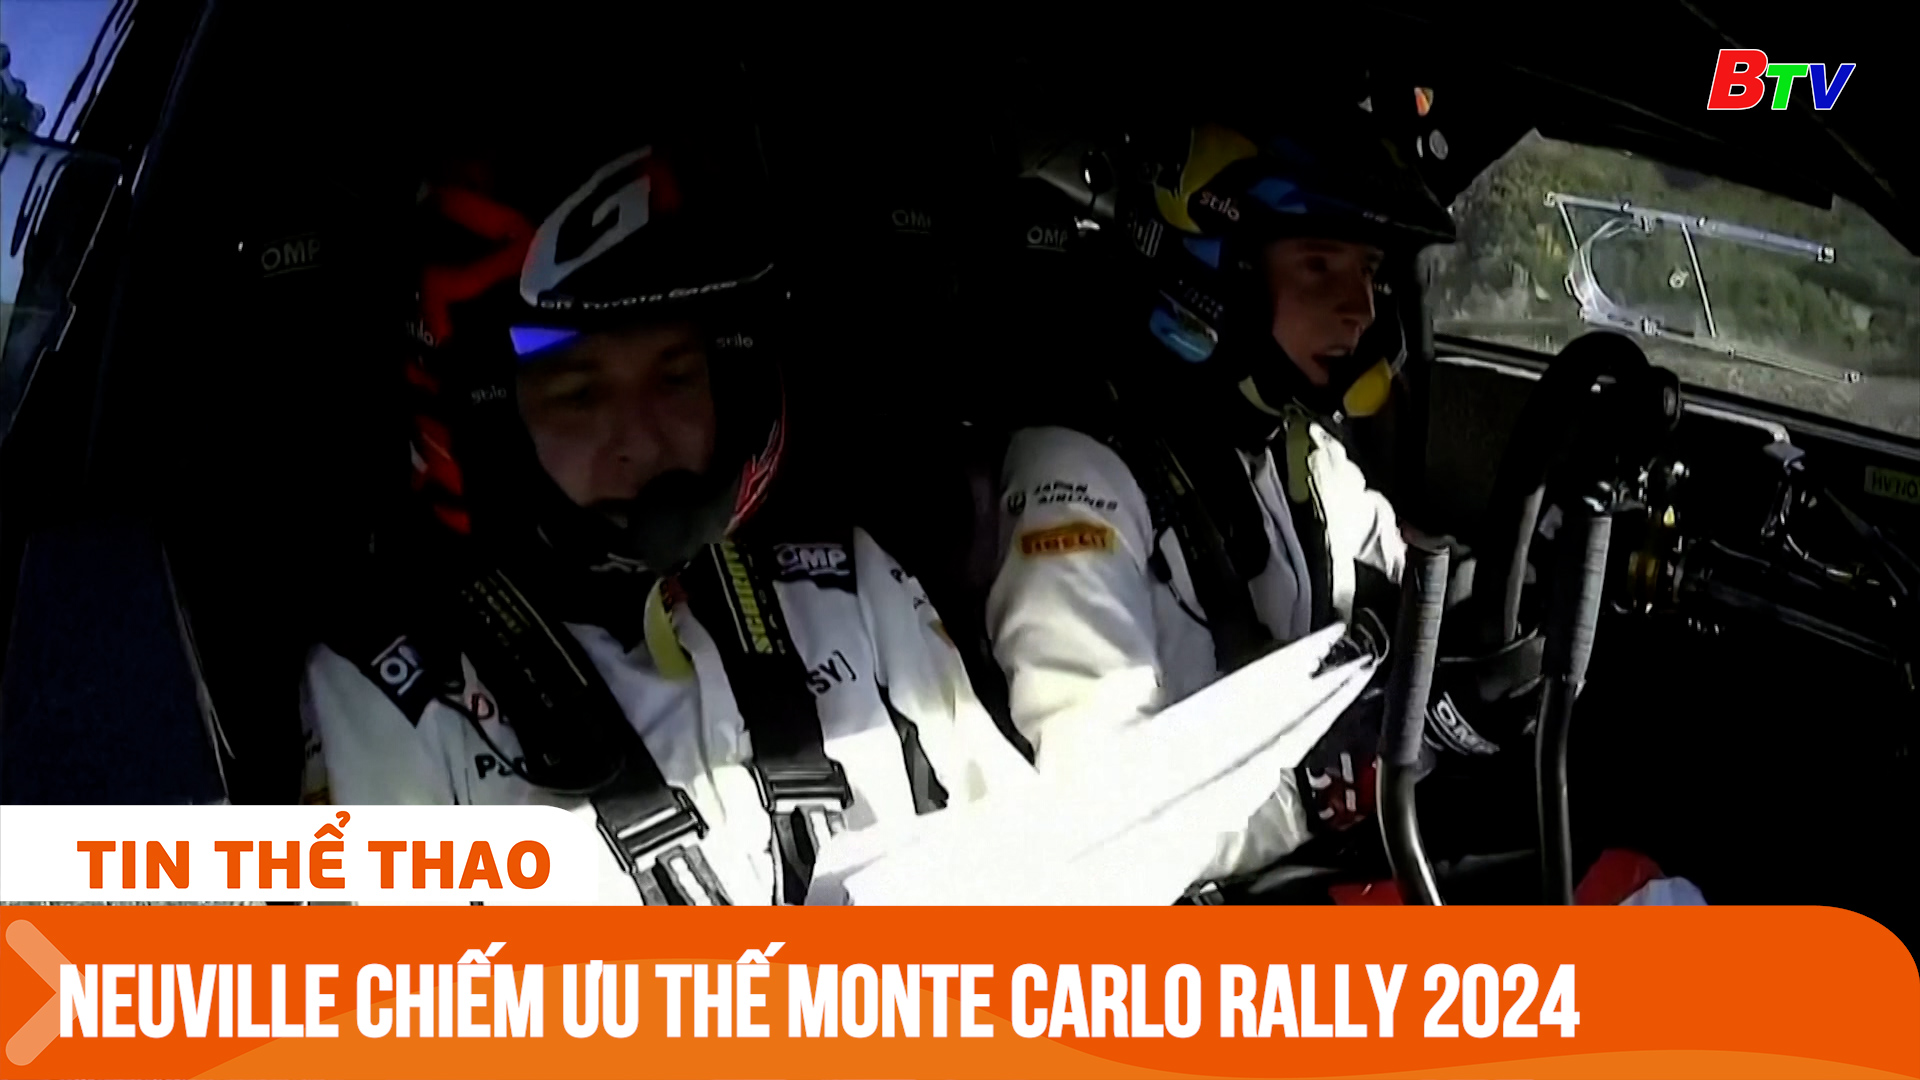 Neuville chiếm ưu thế trước ngày cuối Monte Carlo Rally 2024 | Tin Thể thao 24h	